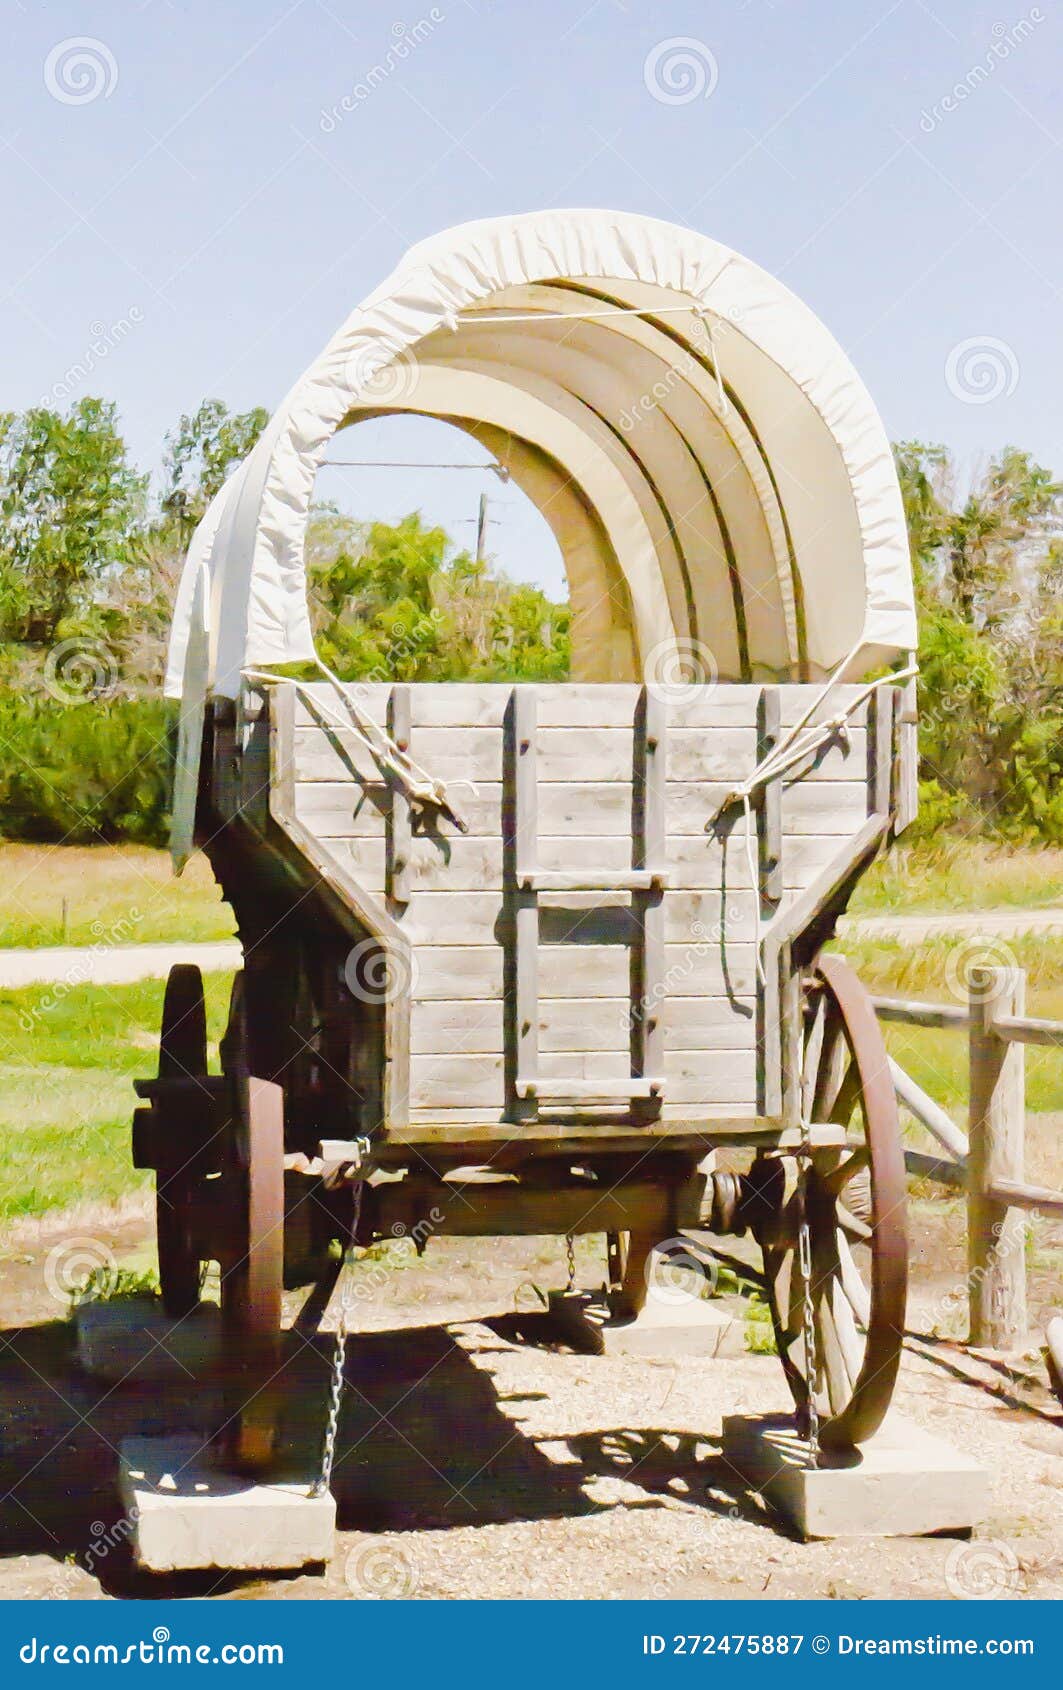 conestoga wagon